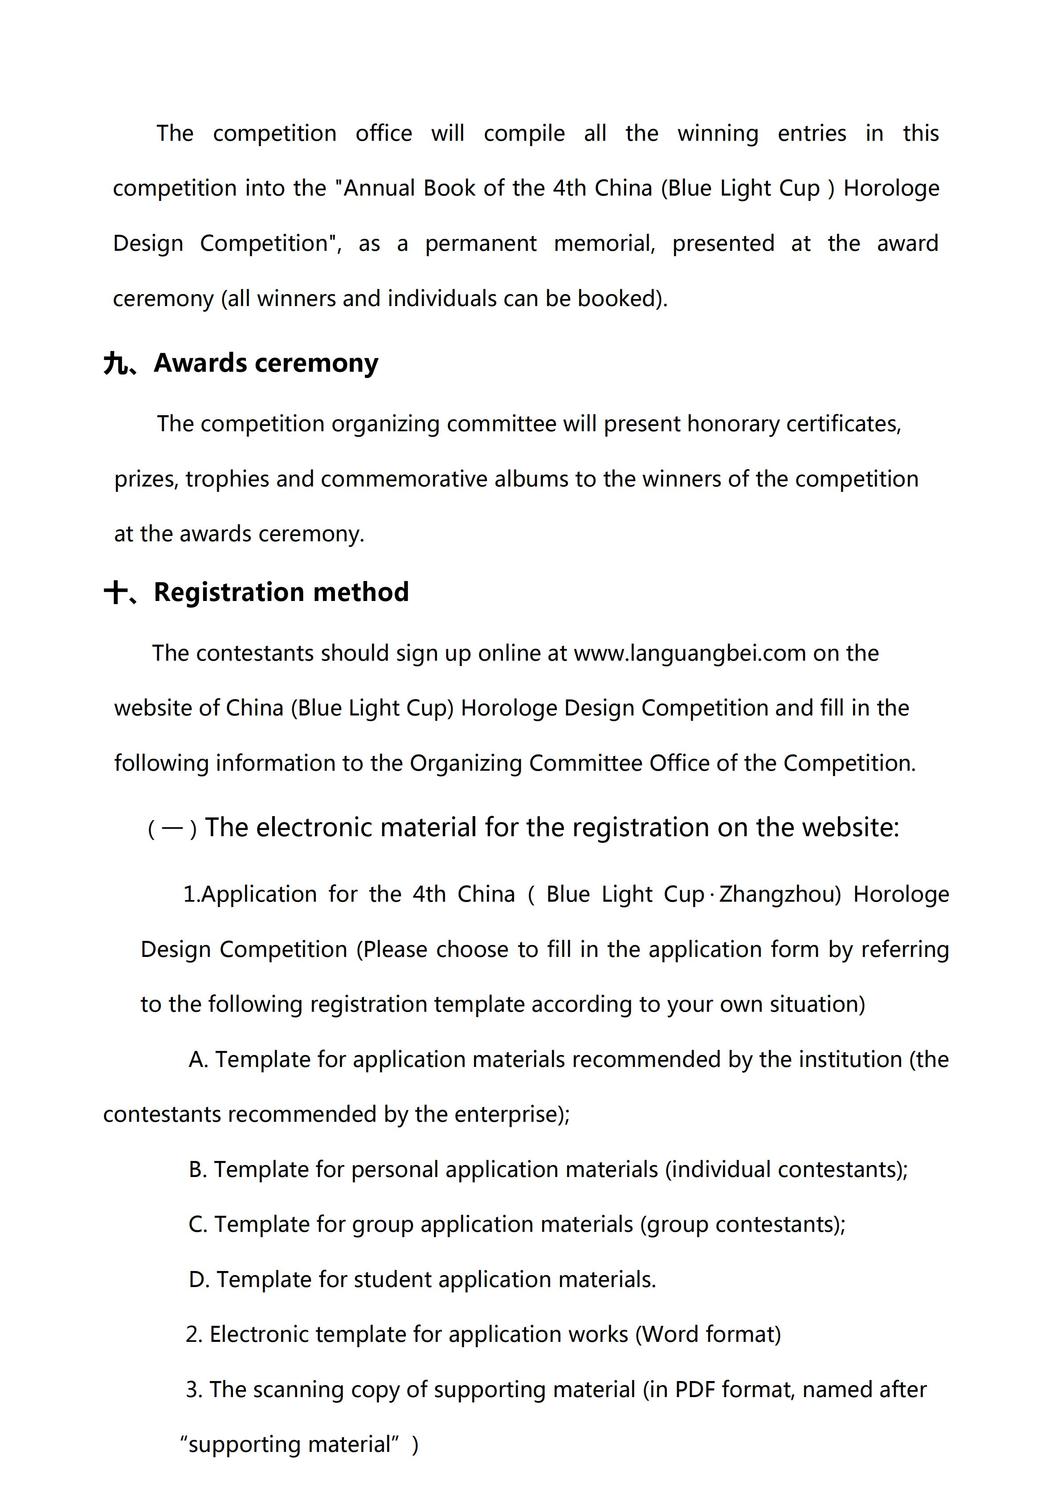 5英文版-关于报名参加第四届中国（蓝光杯• 漳州 ）钟表设计大赛的通知_04.jpg